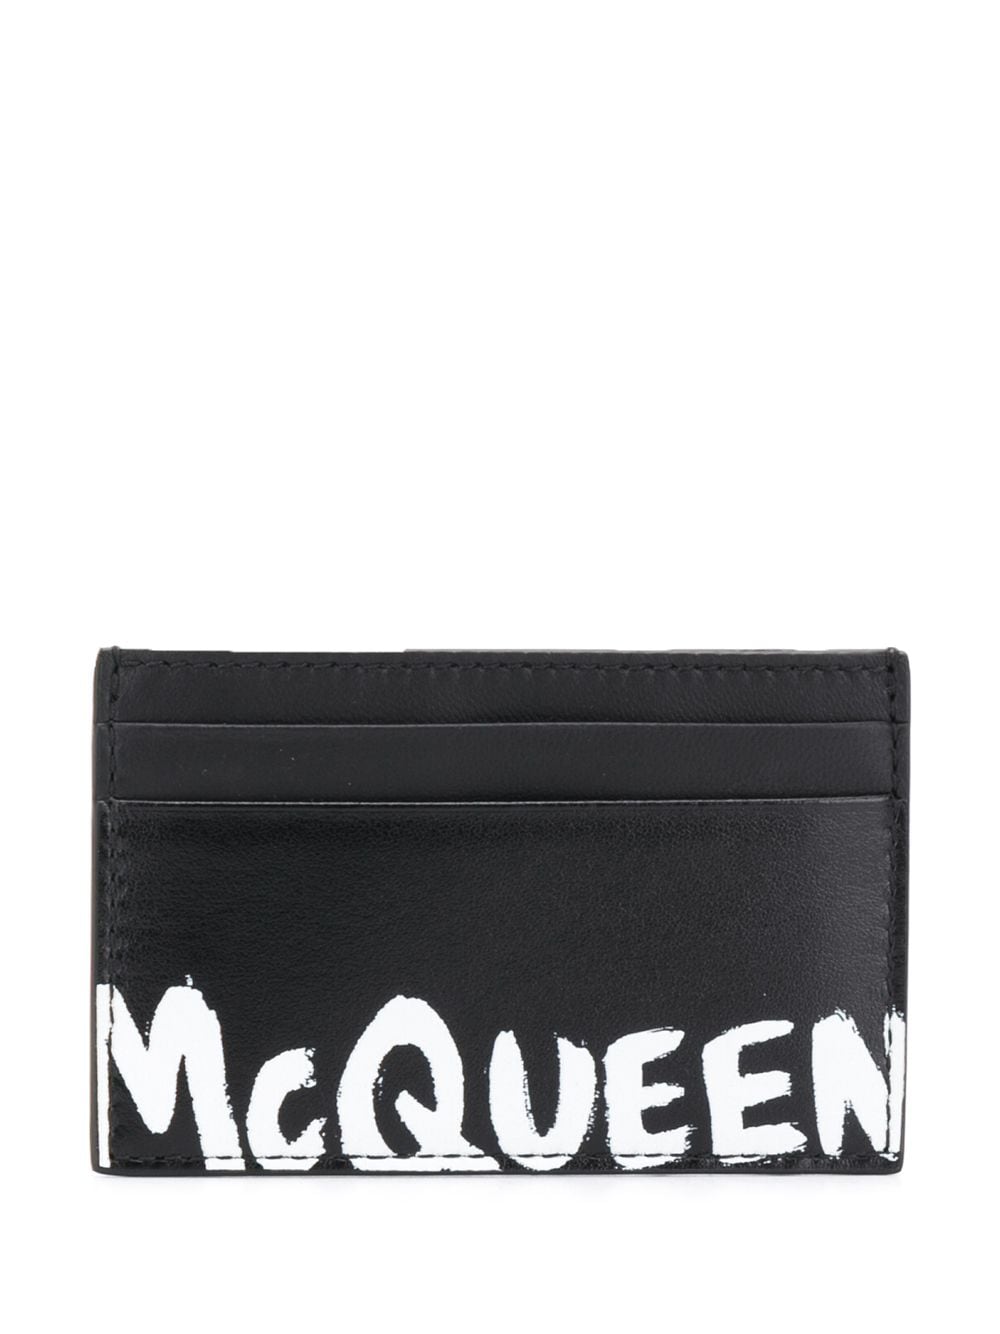 Alexander McQueen logo stamp cardholder - Black von Alexander McQueen